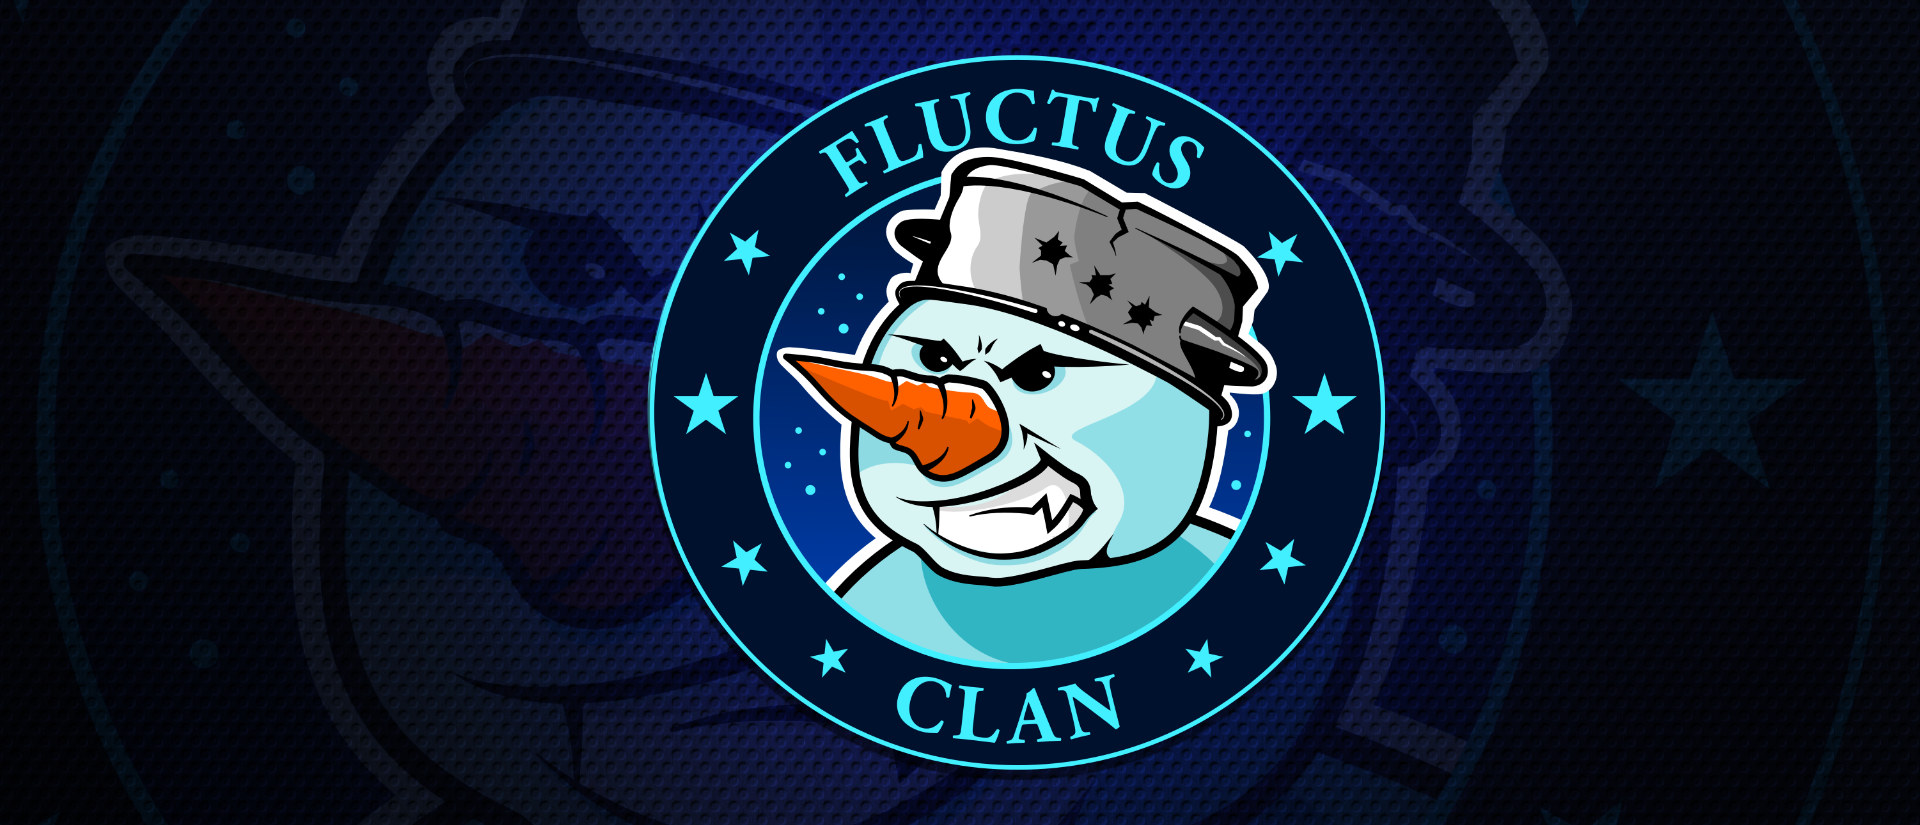 logo-fluctus-clan-ginski-Baner